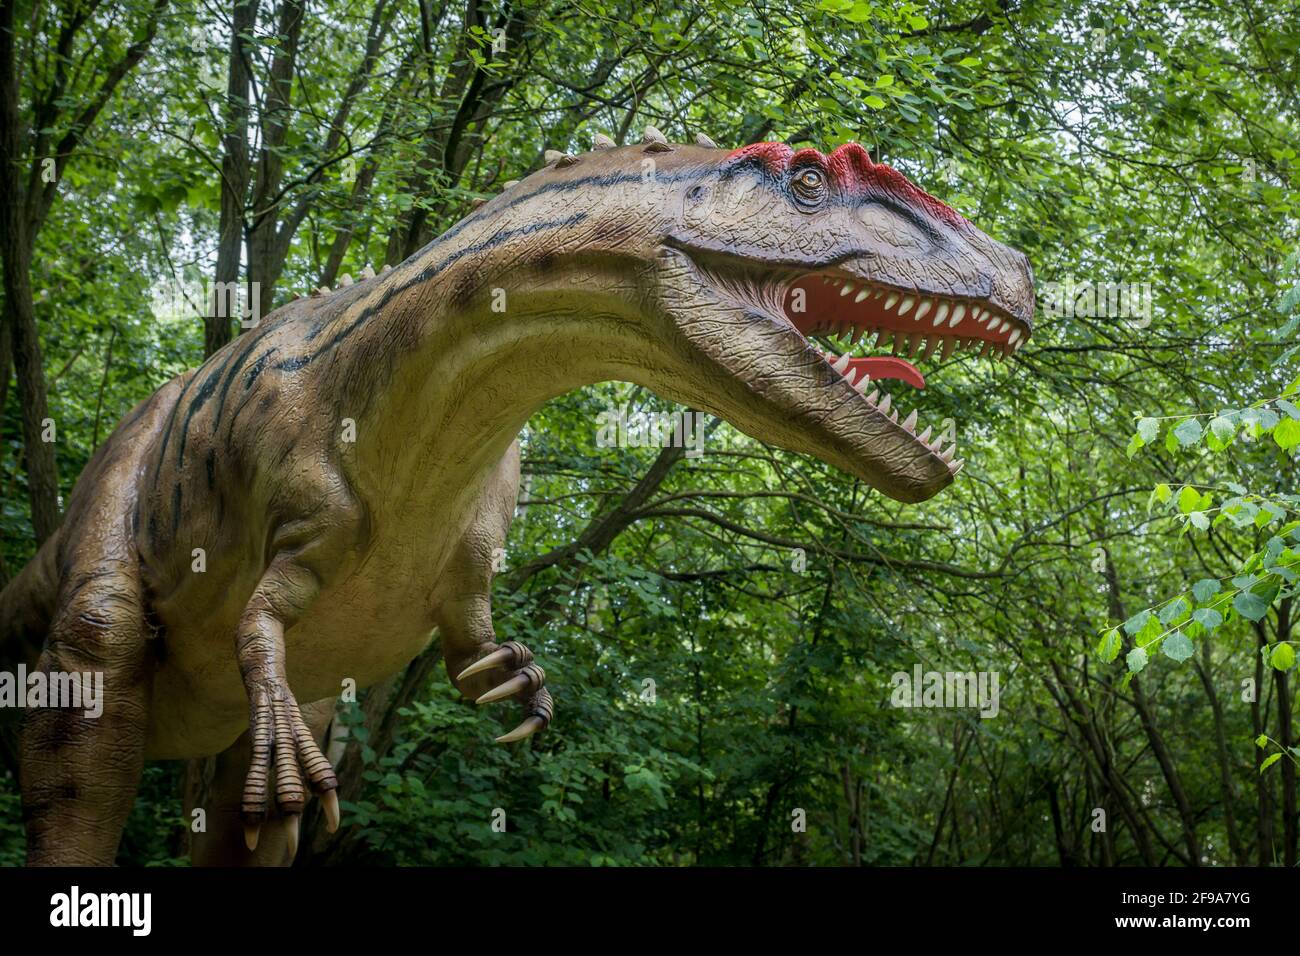 Dinosaure Allosaurus (semblable au Tyrannosaurus) comme modèle dans le Dinopark Münchehagen près de Hanovre. Vécu il y a environ 150 millions d'années (fin de la période jurassique) en Amérique du Nord et en Europe, était d'environ 9m de long et 1,5t en poids. Banque D'Images